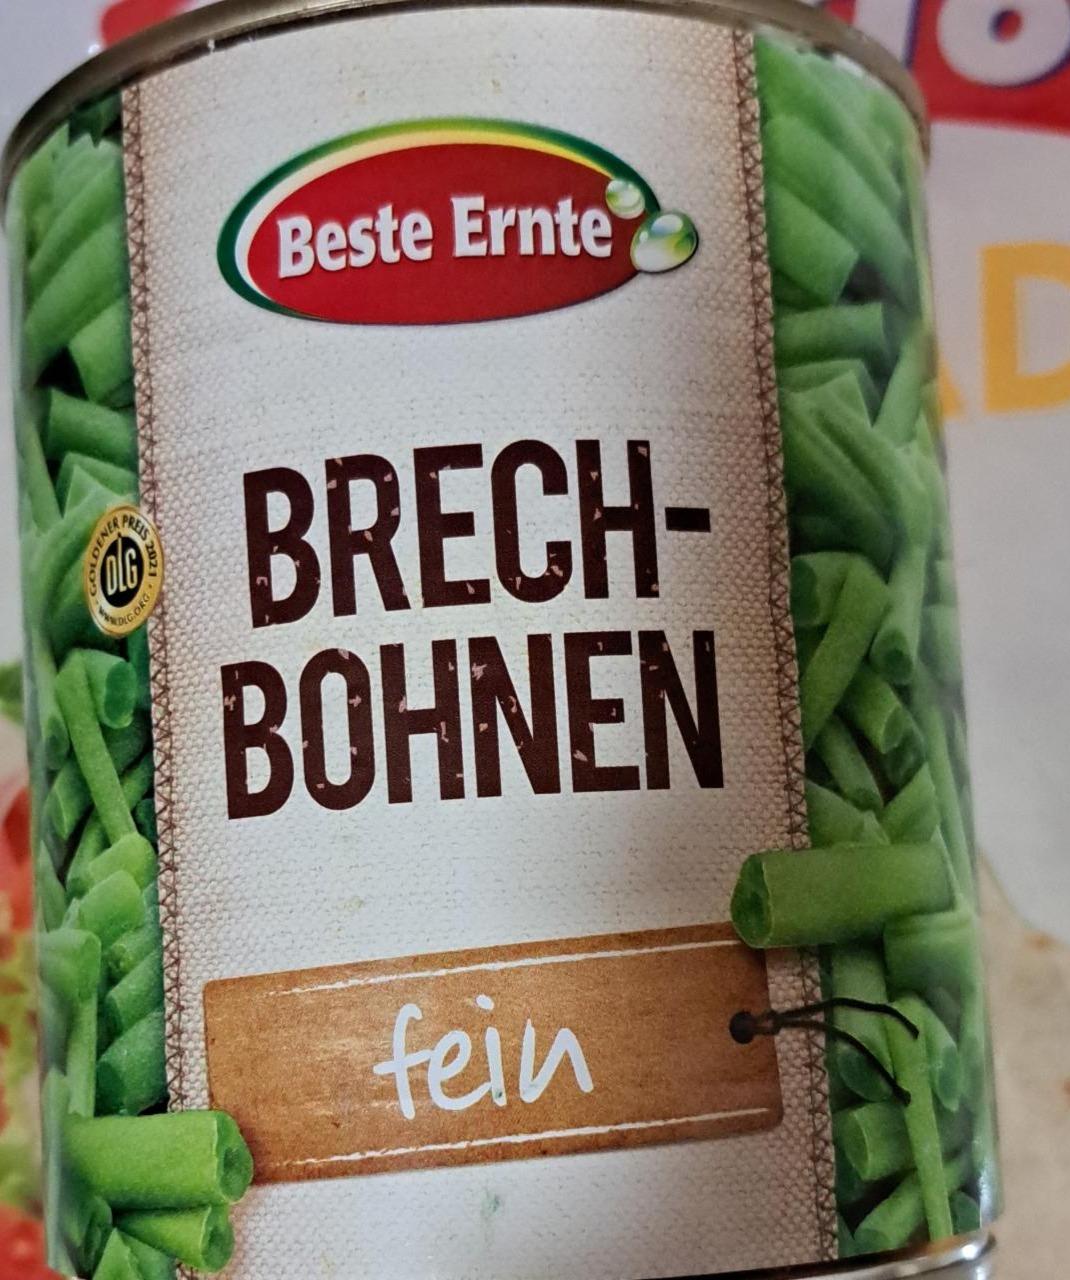 Fotografie - Brech-Bohnen Beste Ernte